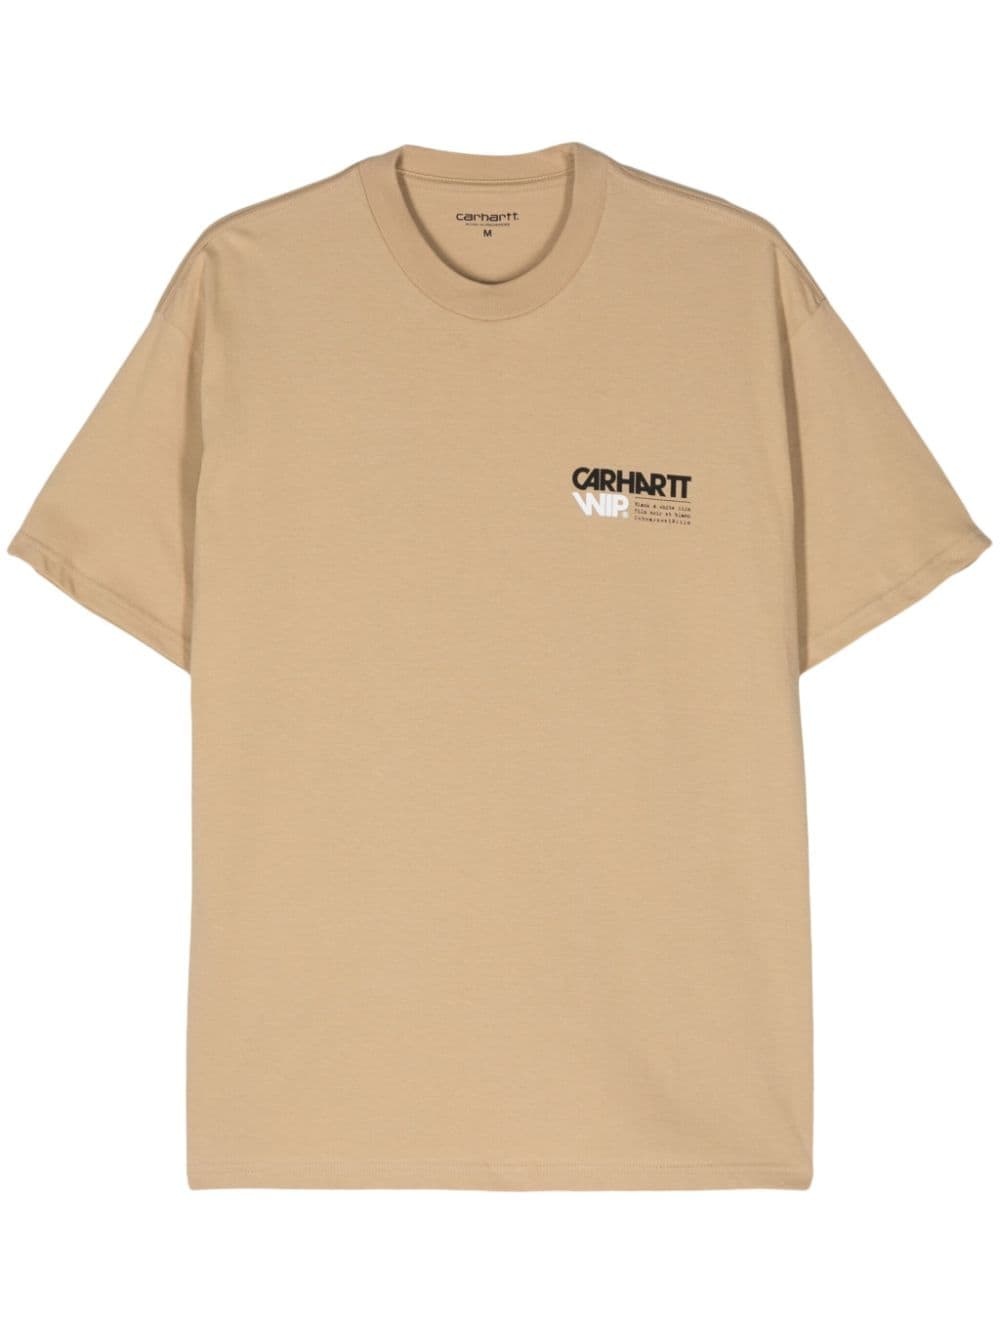 Contact Sheet cotton T-shirt - 1